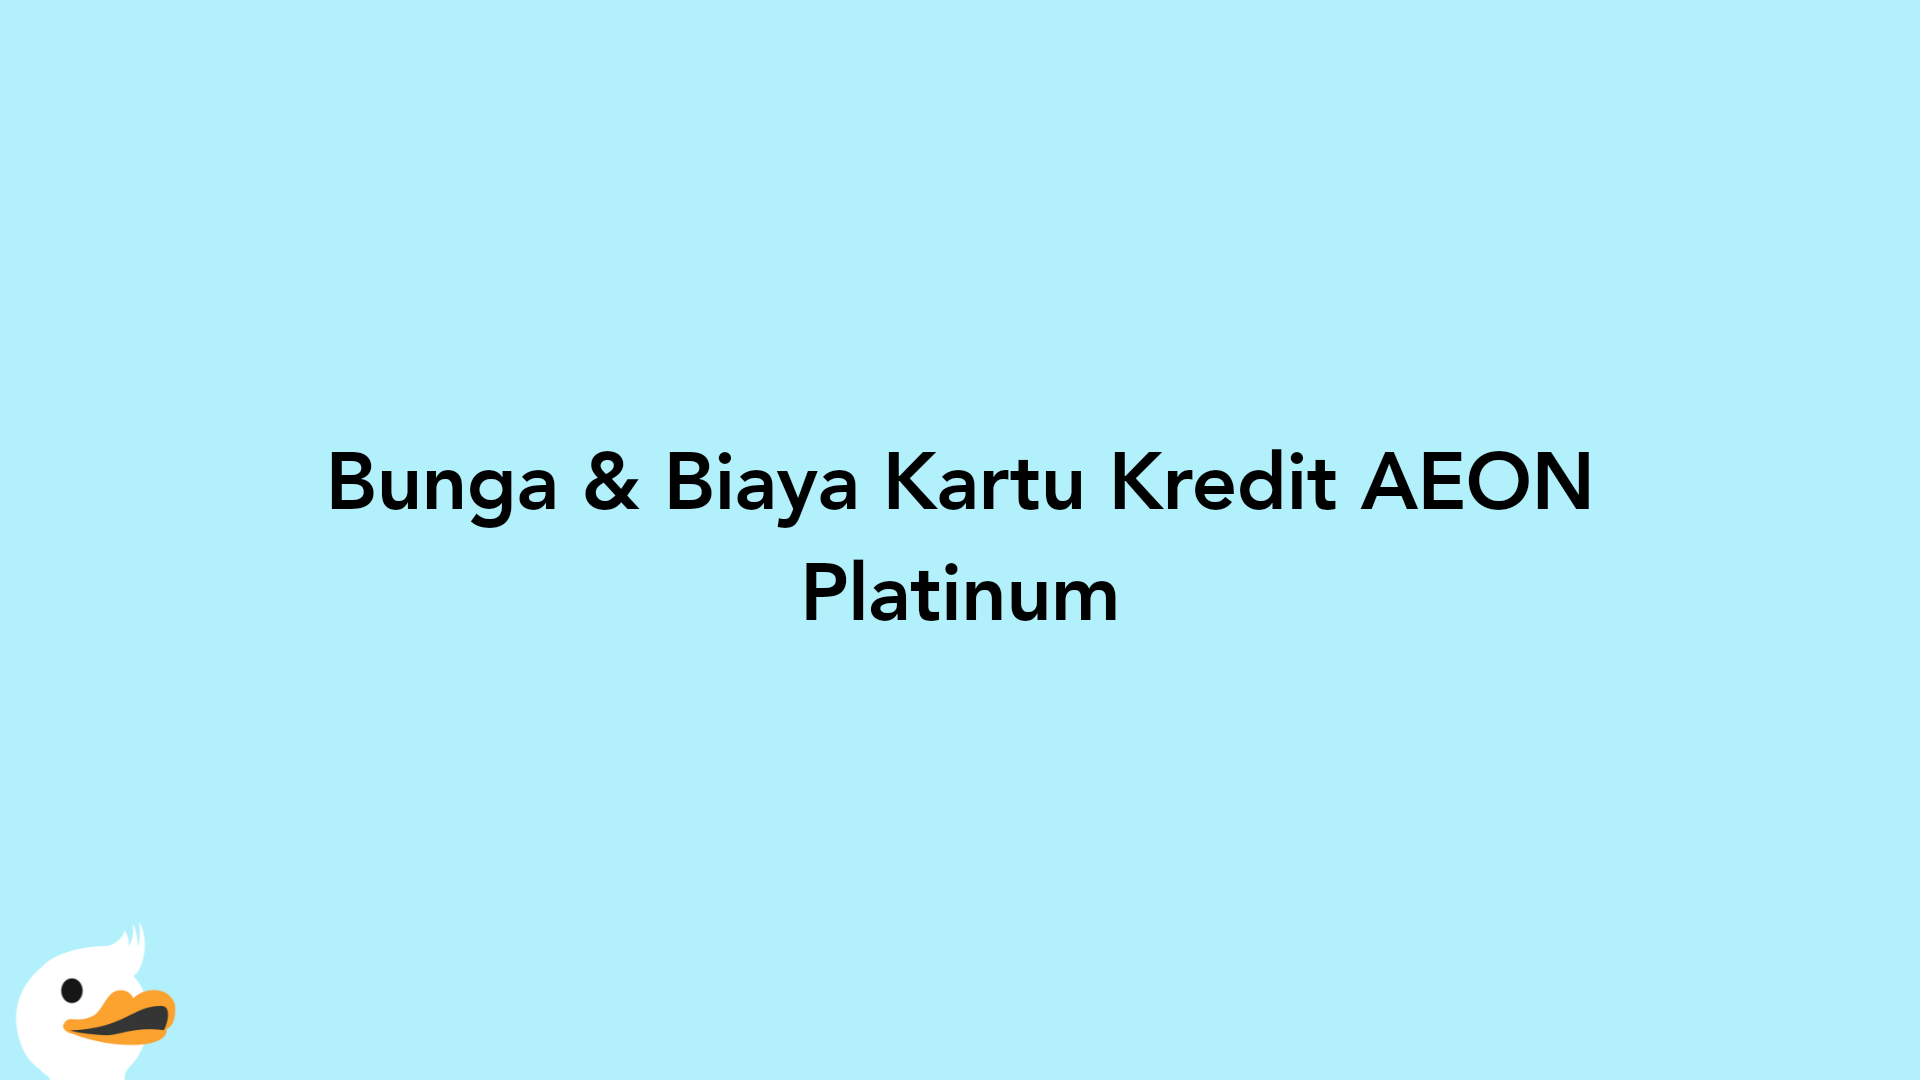 Bunga & Biaya Kartu Kredit AEON Platinum